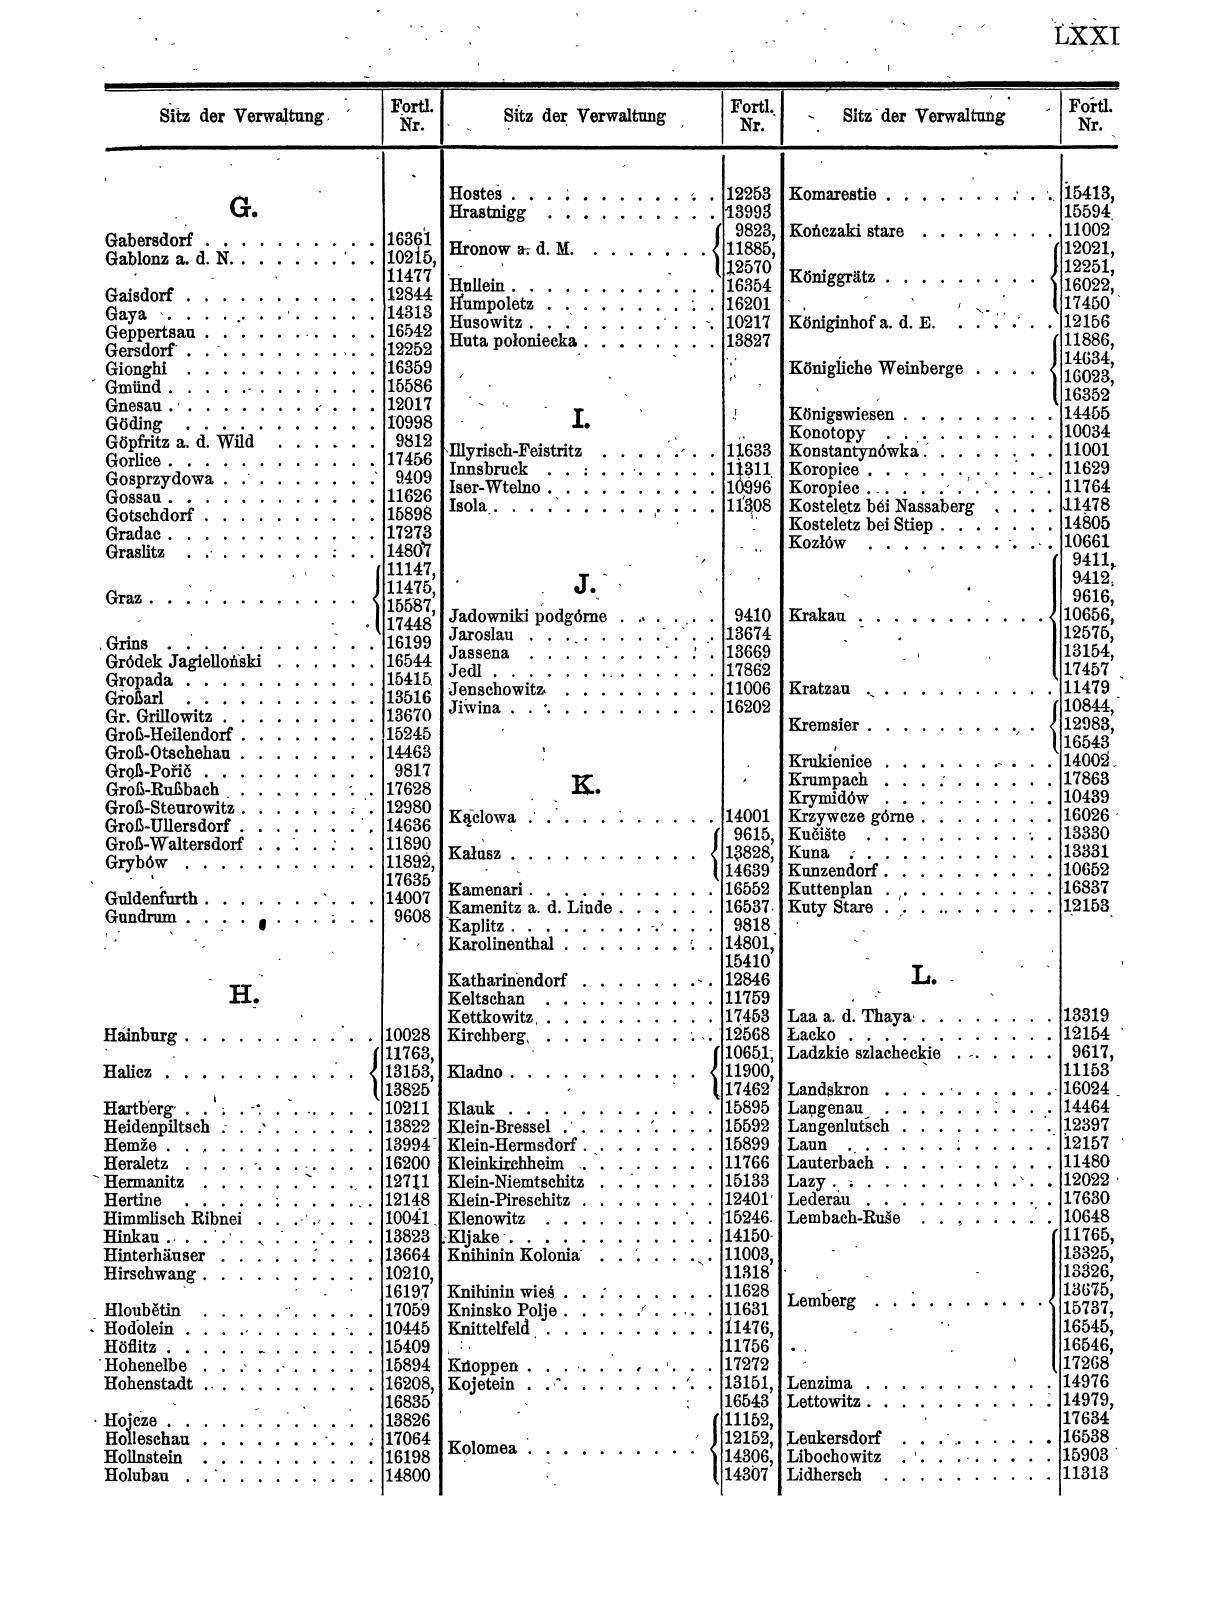 Zentralblatt für die Eintragungen in das Handelsregister 1913, Teil 2 - Seite 75